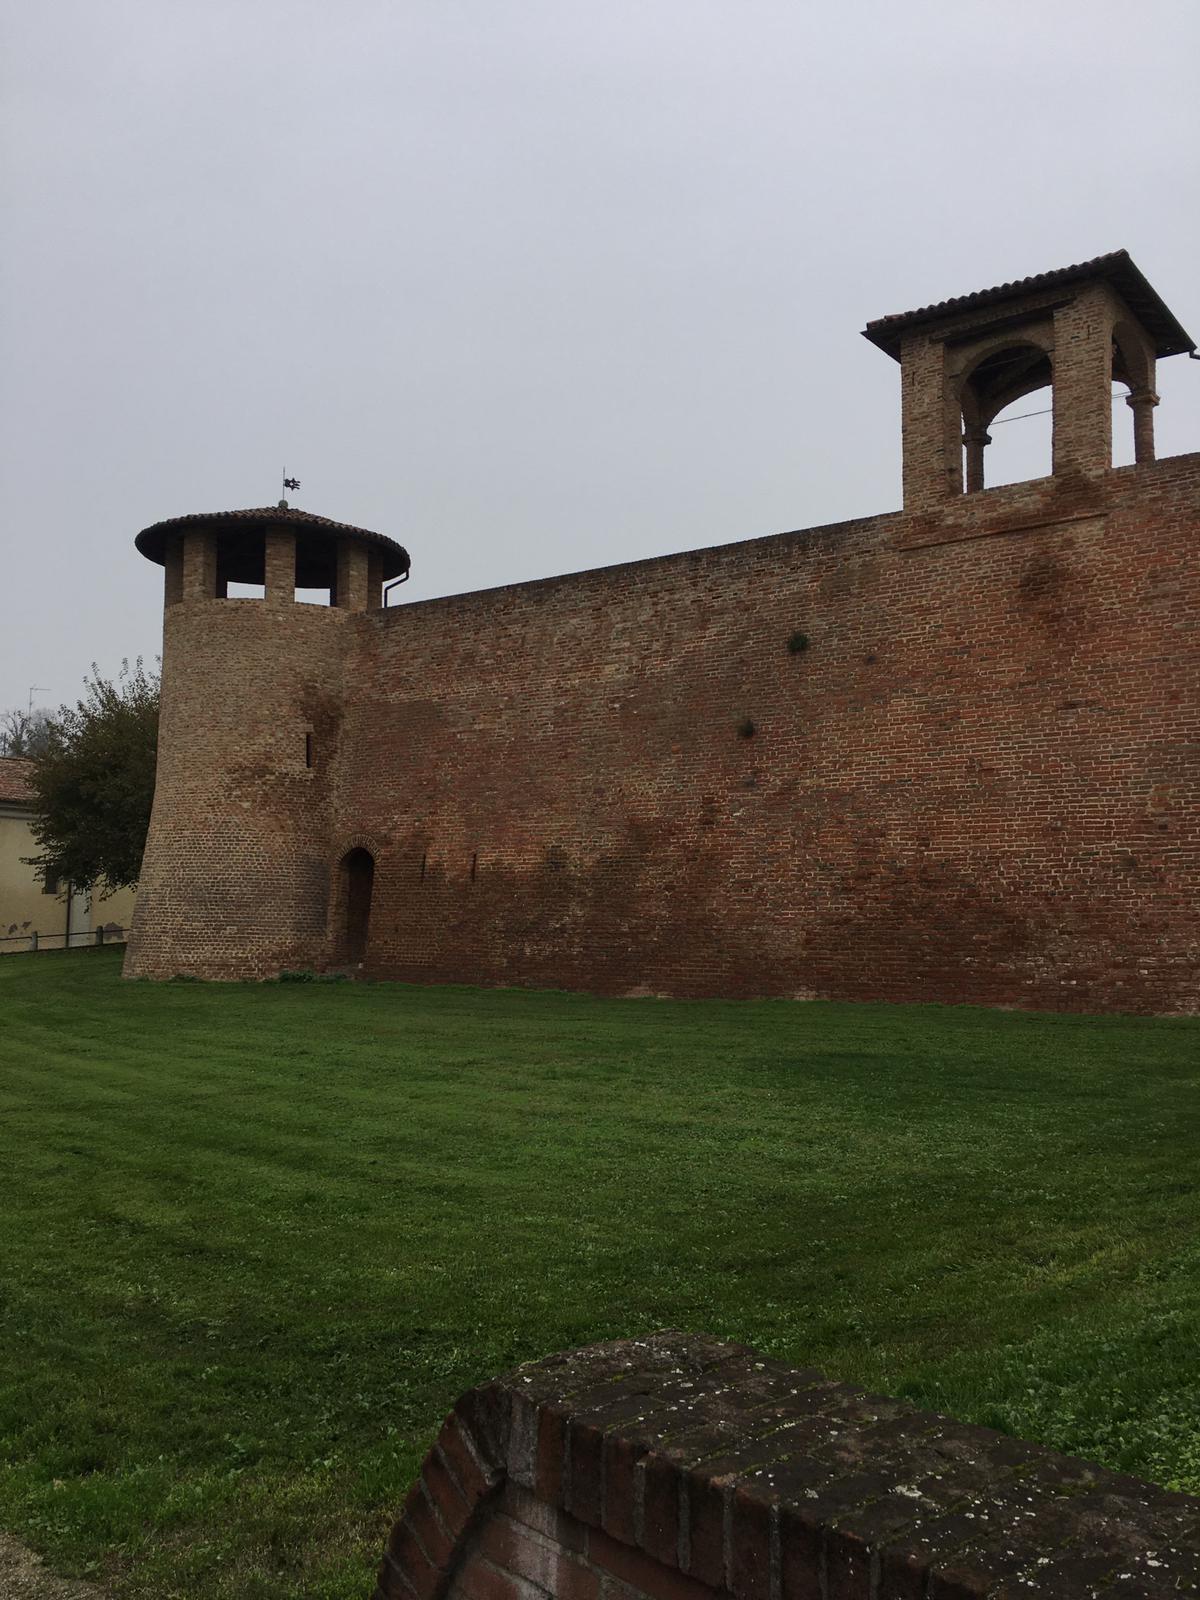 mura di cinta e torre (mura, urbiche) - Pomaro Monferrato (AL)  (XIII)